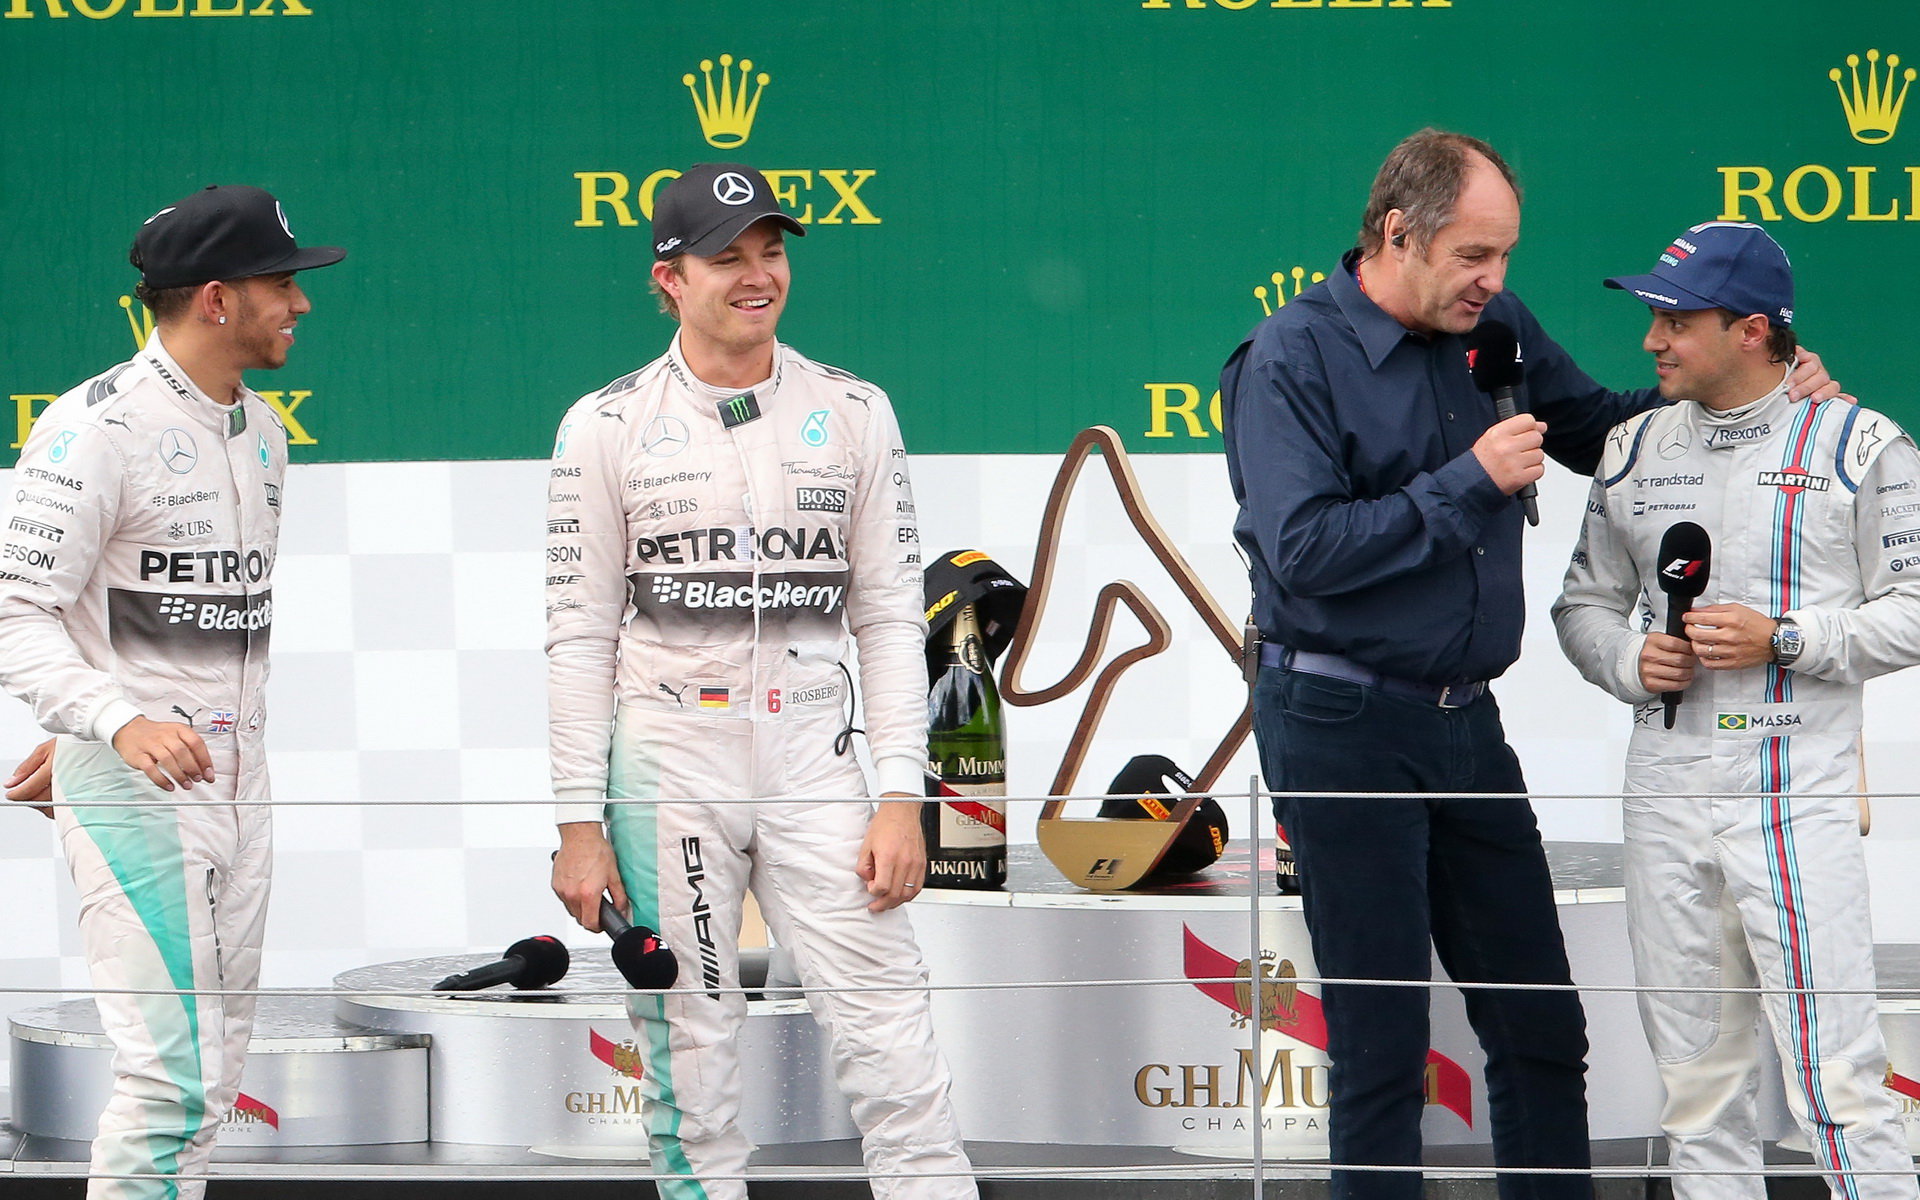 Gerhard Berger startoval na domácí půdě pětkrát, ale nevyhrál ani jednou.